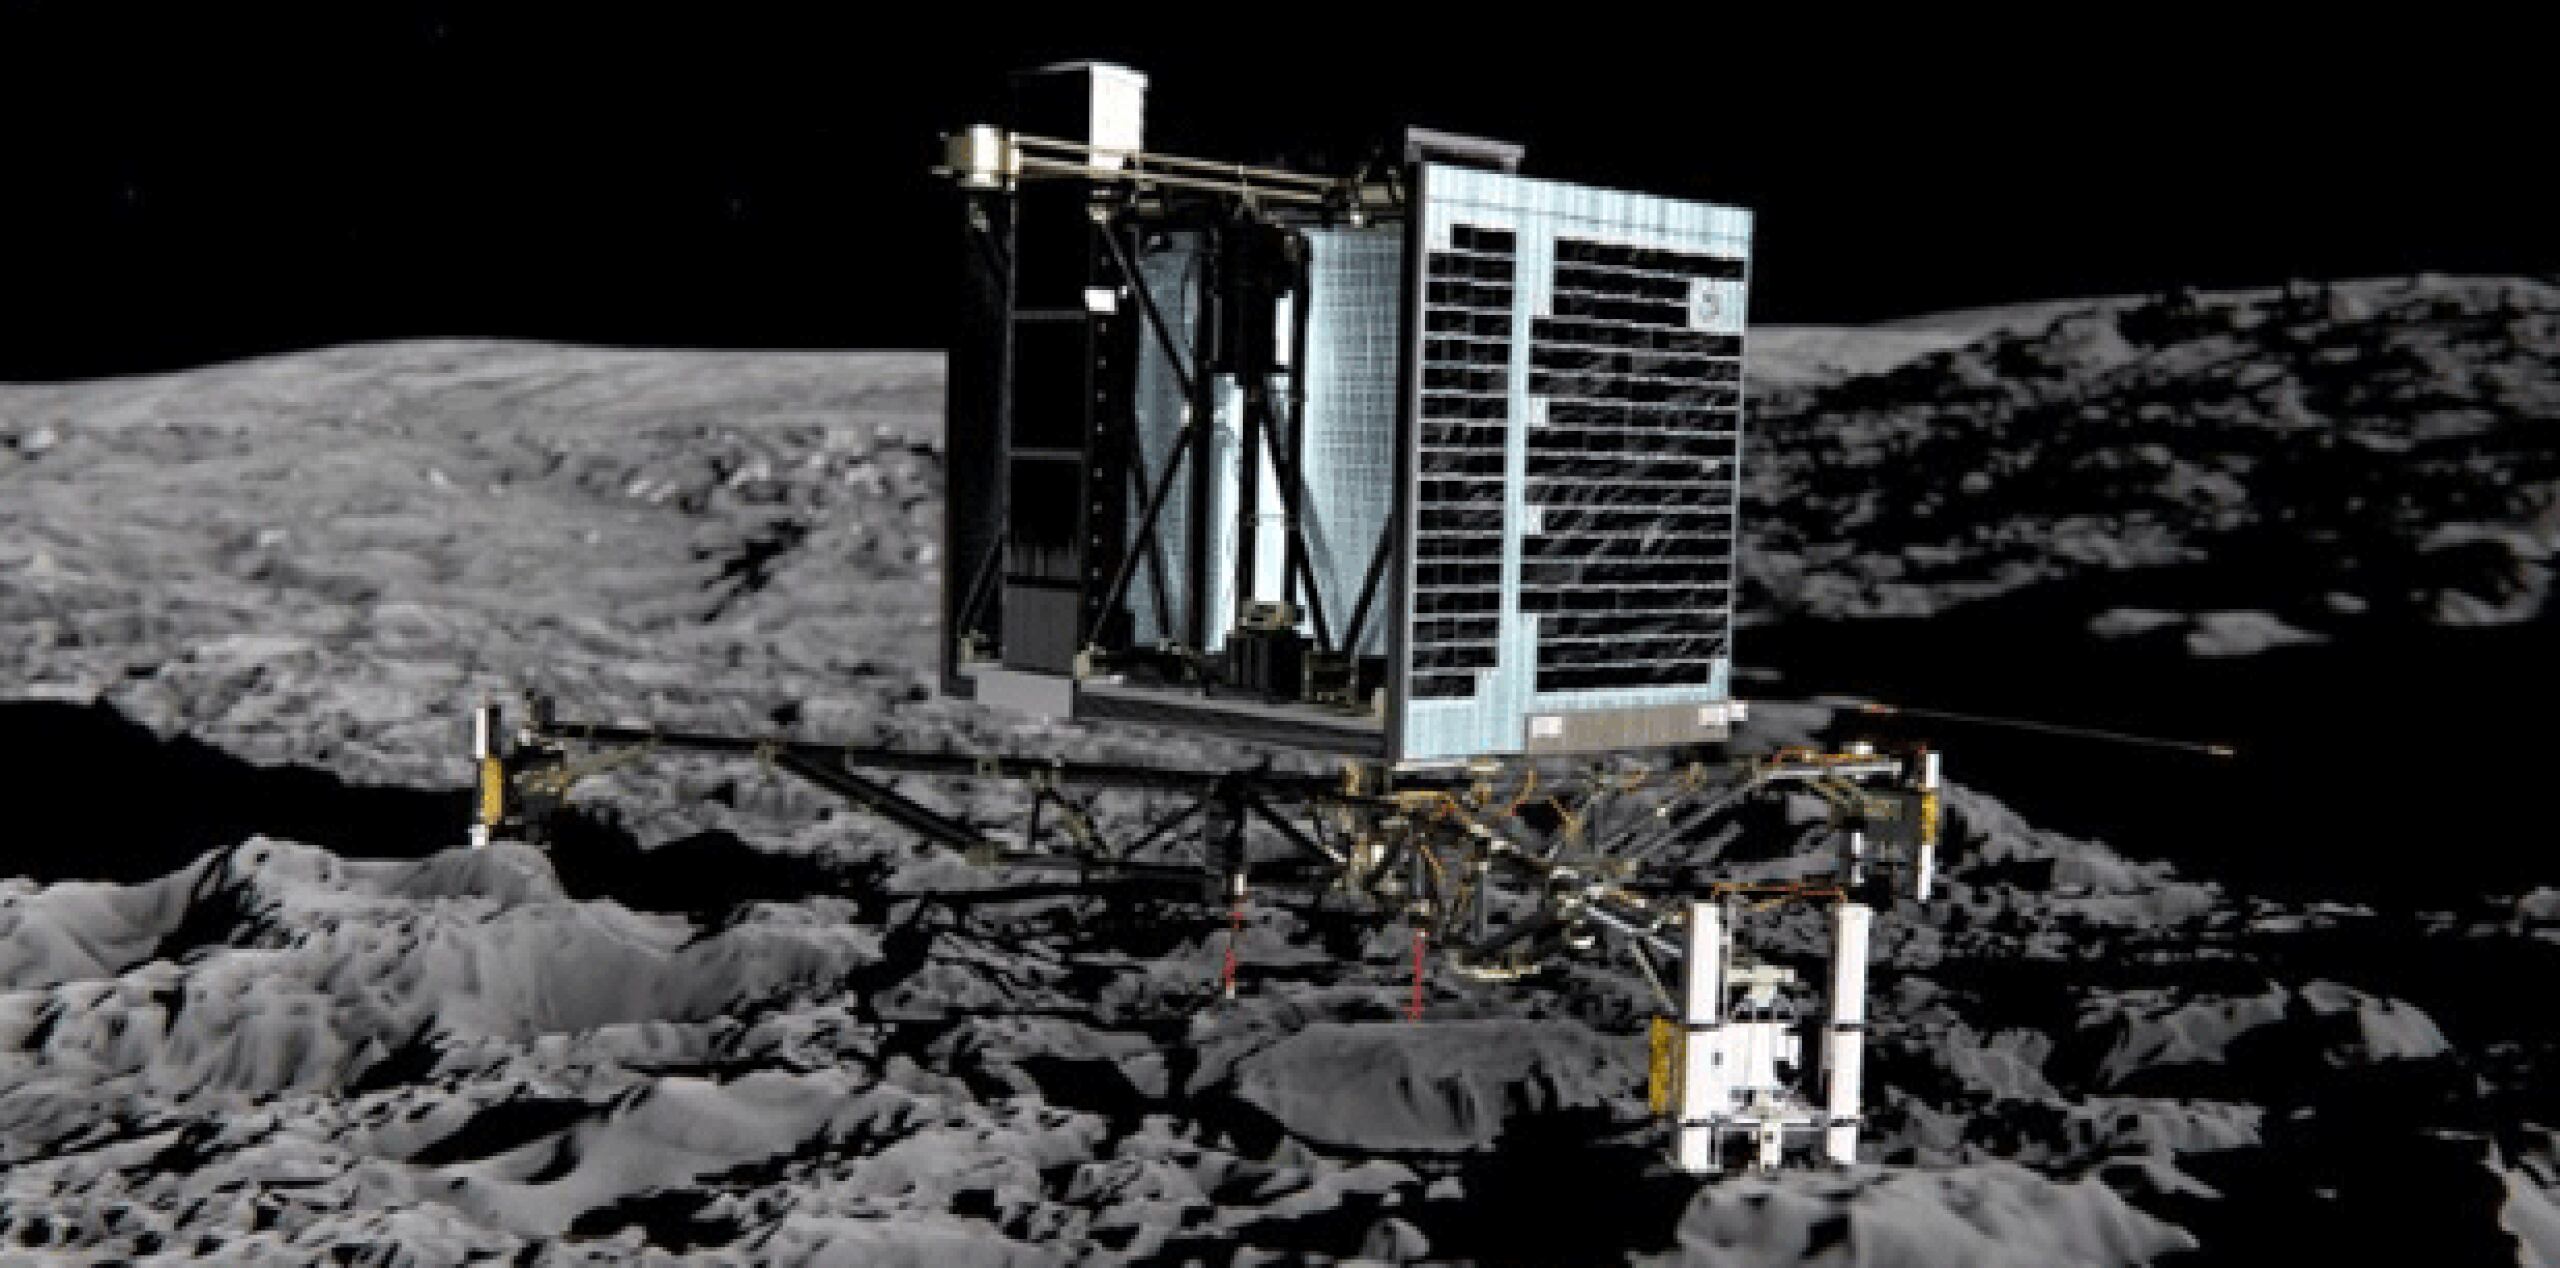 Philae, que forma parte de la misión Rosetta de la Agencia Espacial Europea, utiliza dos instrumentos distintos para "oler" moléculas desde que hizo un aterrizaje accidentado en el cometa 67P/Churyumov-Gerasimenko en noviembre pasado. (AFP)